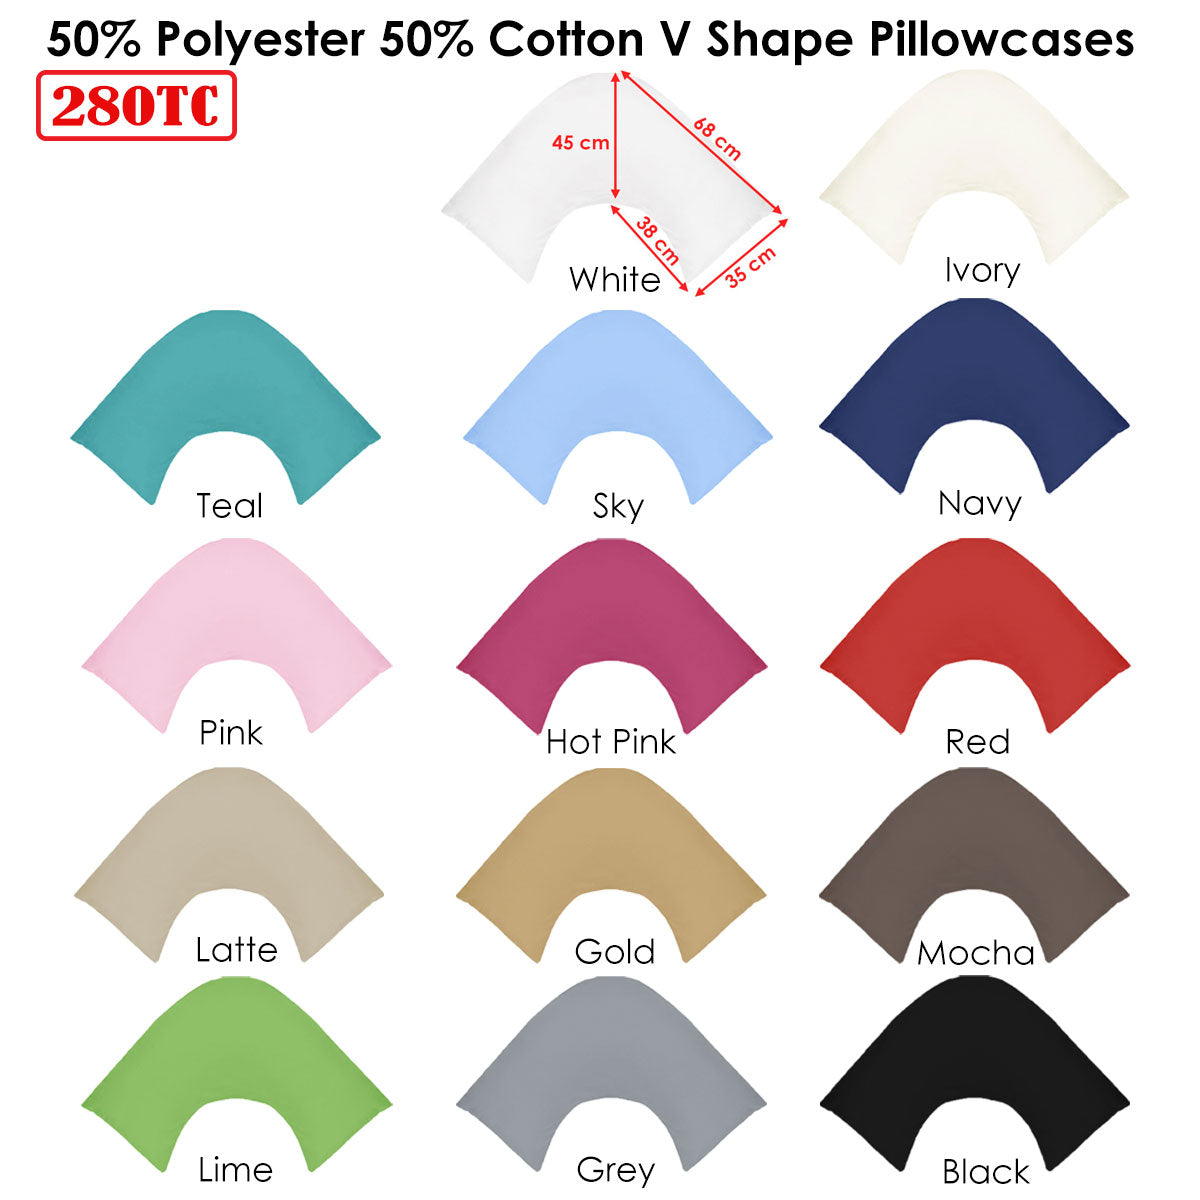 280TC Polyester Cotton V Shape Pillowcase Latte